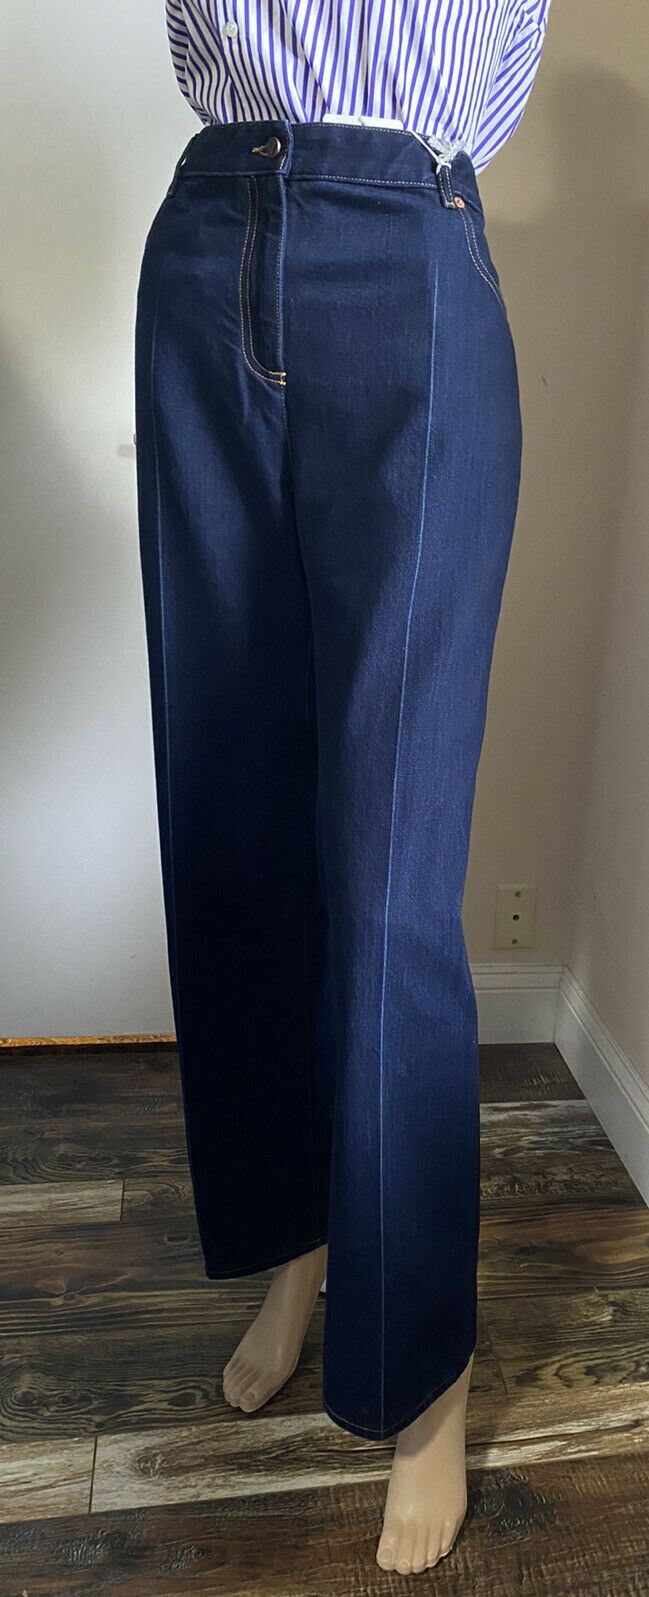 Новые женские укороченные джинсовые брюки-клеш Valentino за 1200 долларов, синие 32, Италия